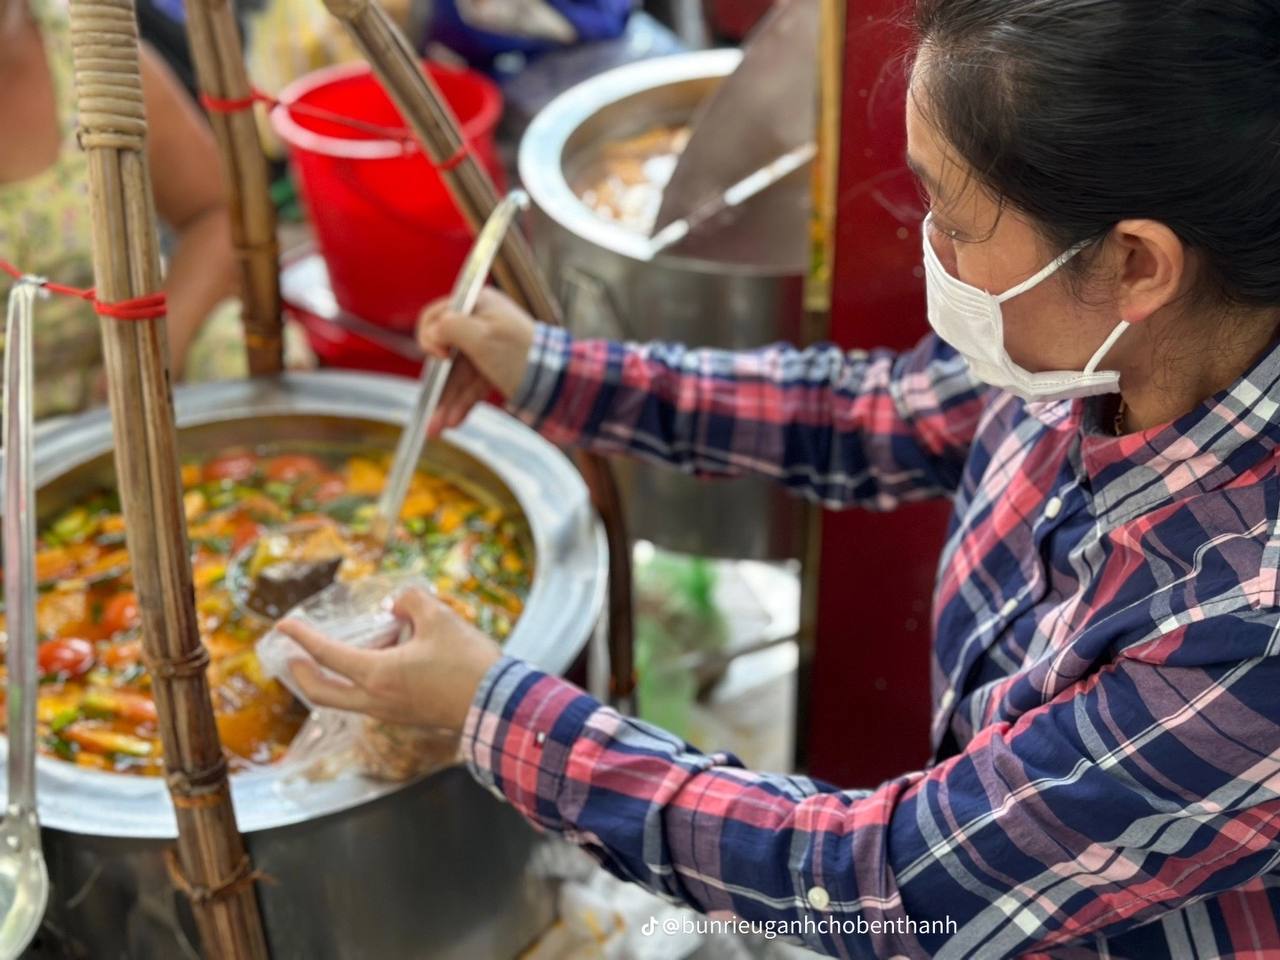 3 quán ngon khu chợ Bến Thành nức tiếng gần xa: Tiệm bánh bèo bán hơn 1.000 đĩa/ngày, hàng bún riêu “sang chảnh” nhiều nghệ sĩ nghe danh ghé ăn - ảnh 14